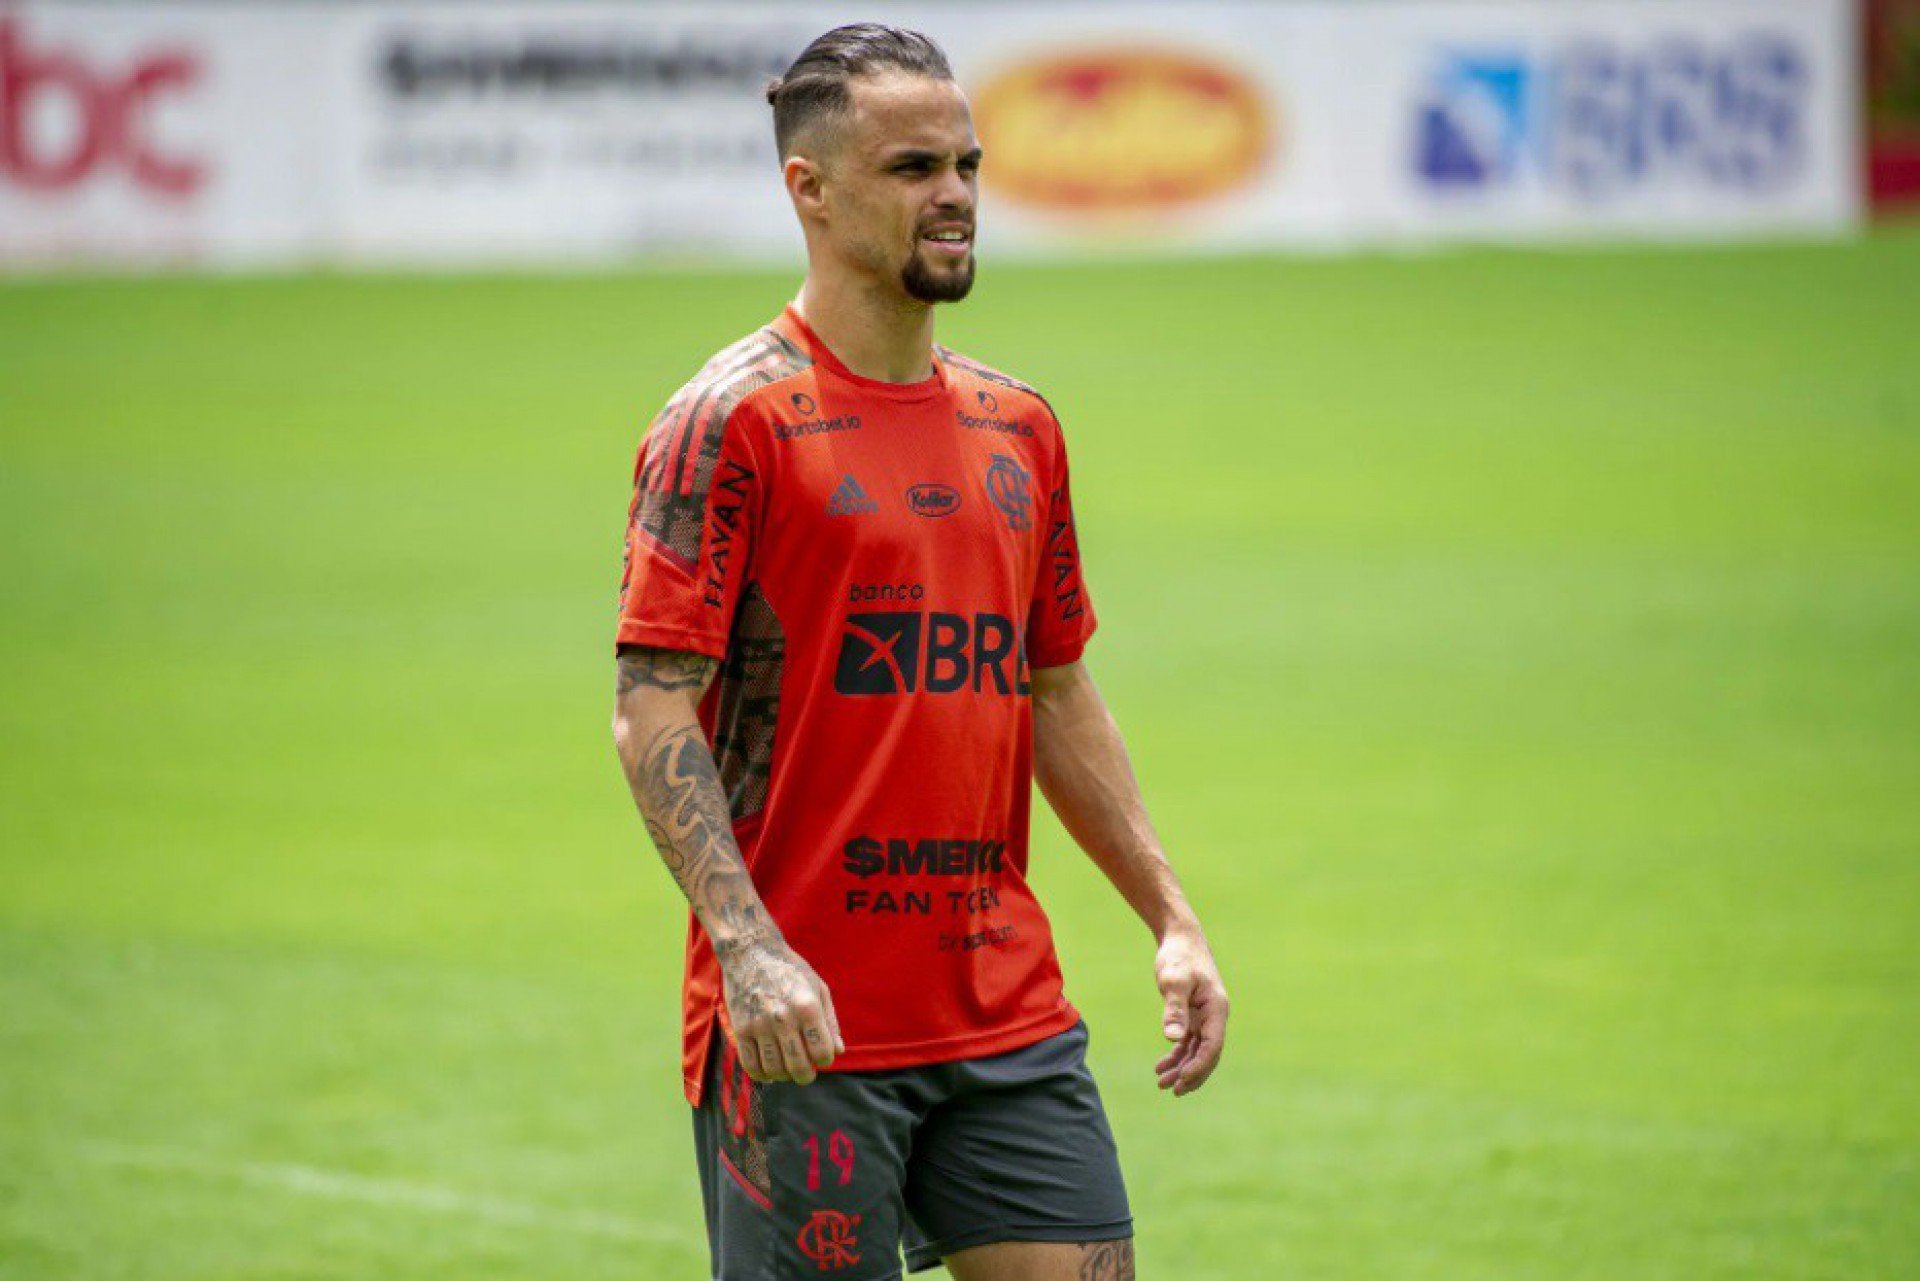 Campeão brasileiro em 2019 e 2020 e acostumado a colocar vários jogadores na seleção da competição nos últimos anos, o Flamengo teve que se contentar apenas com a presença de Michael no chamado 